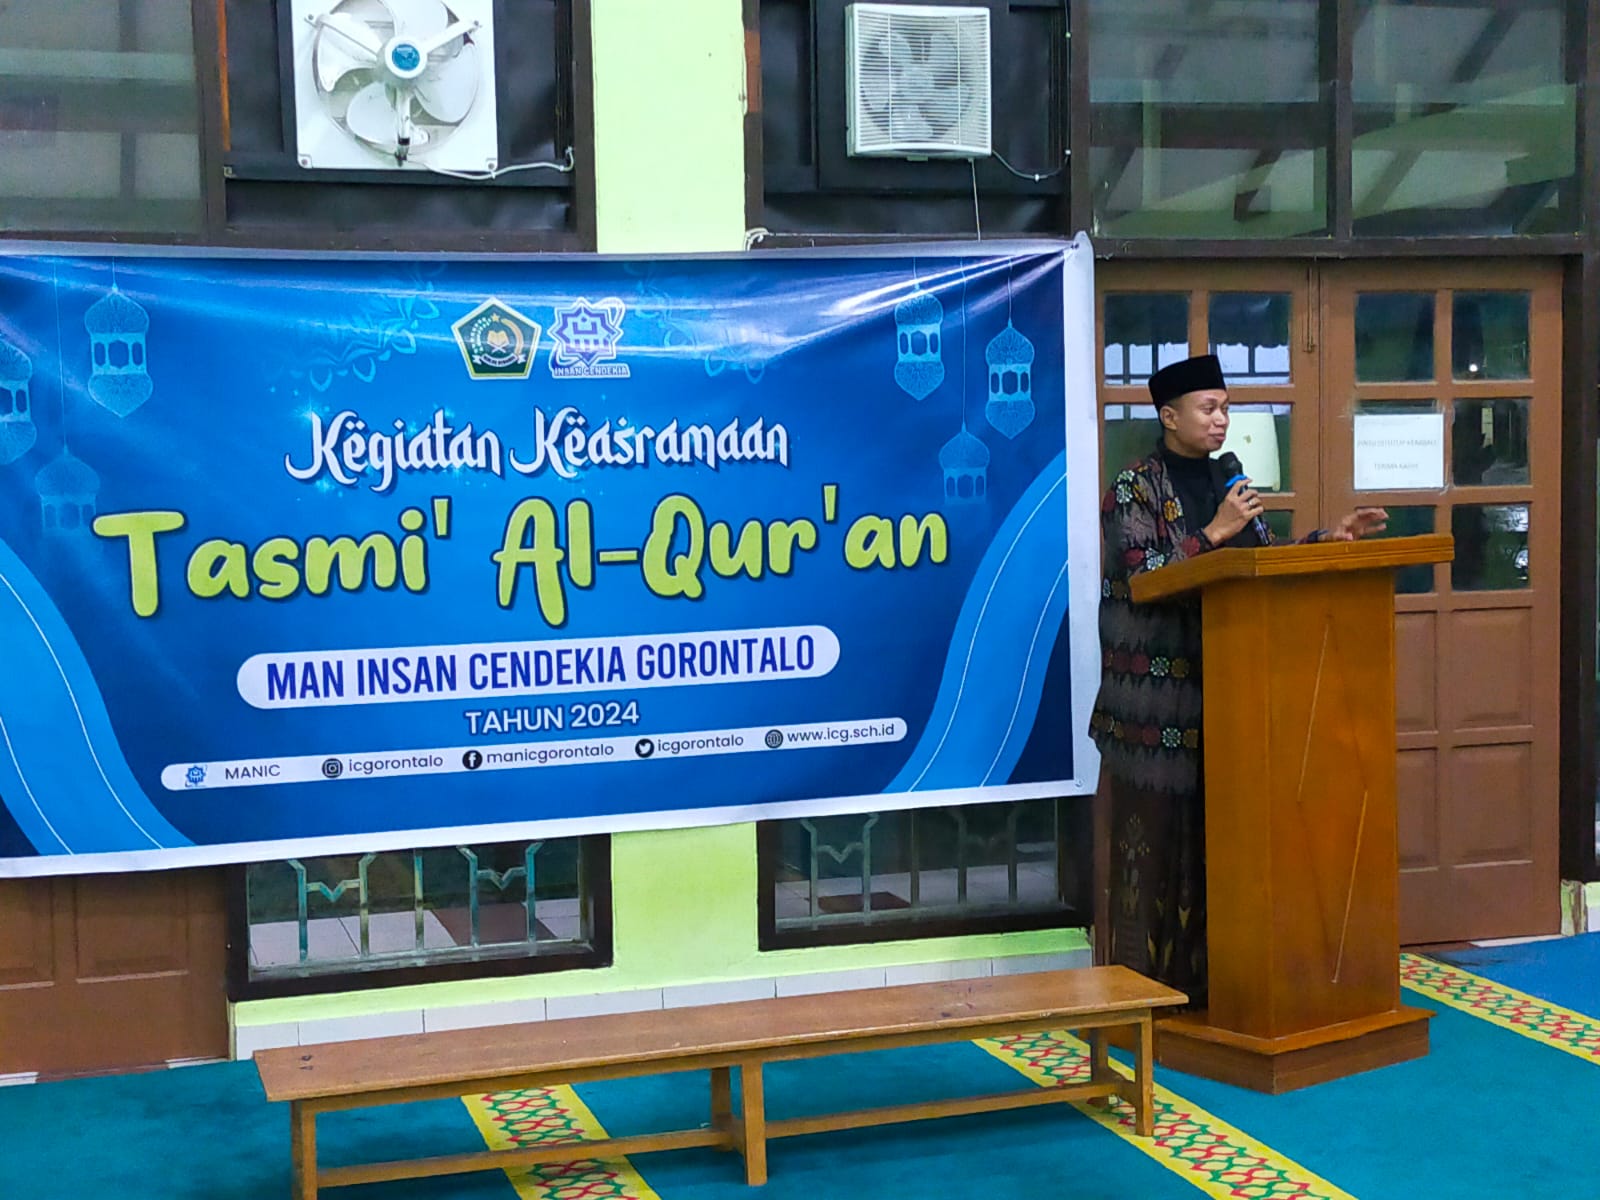 Kegiatan Keasramaan Tasmi' Al-Qur'an di MAN IC Gorontalo